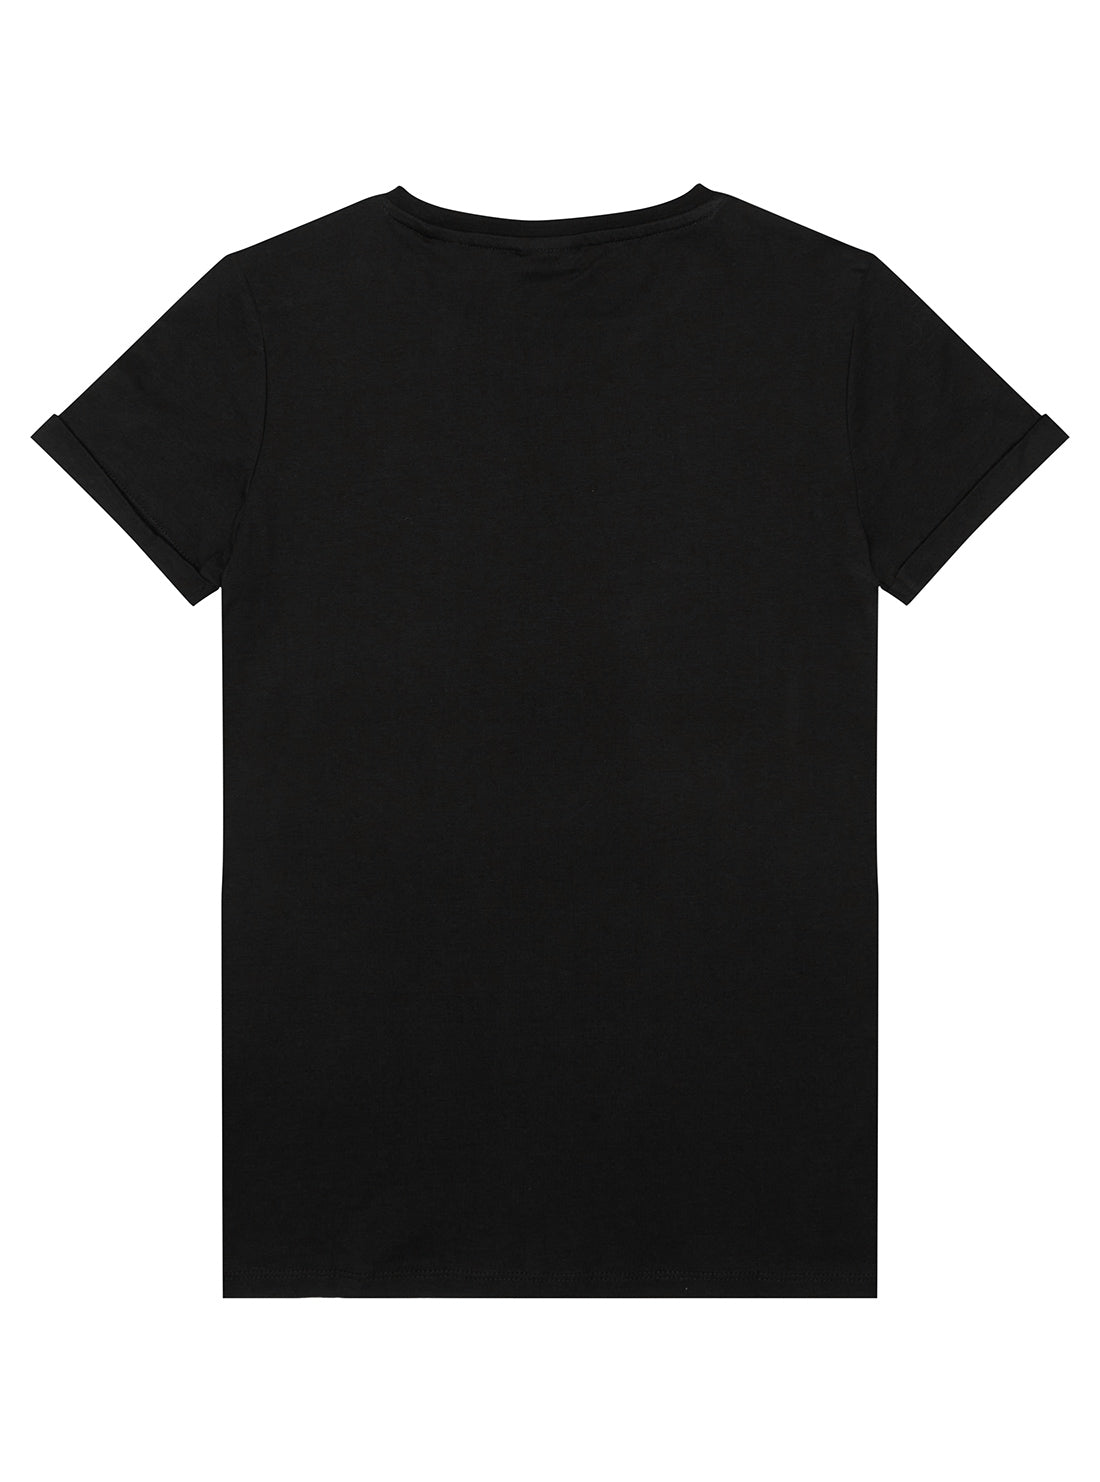 Girl black t-shirt - Roblox